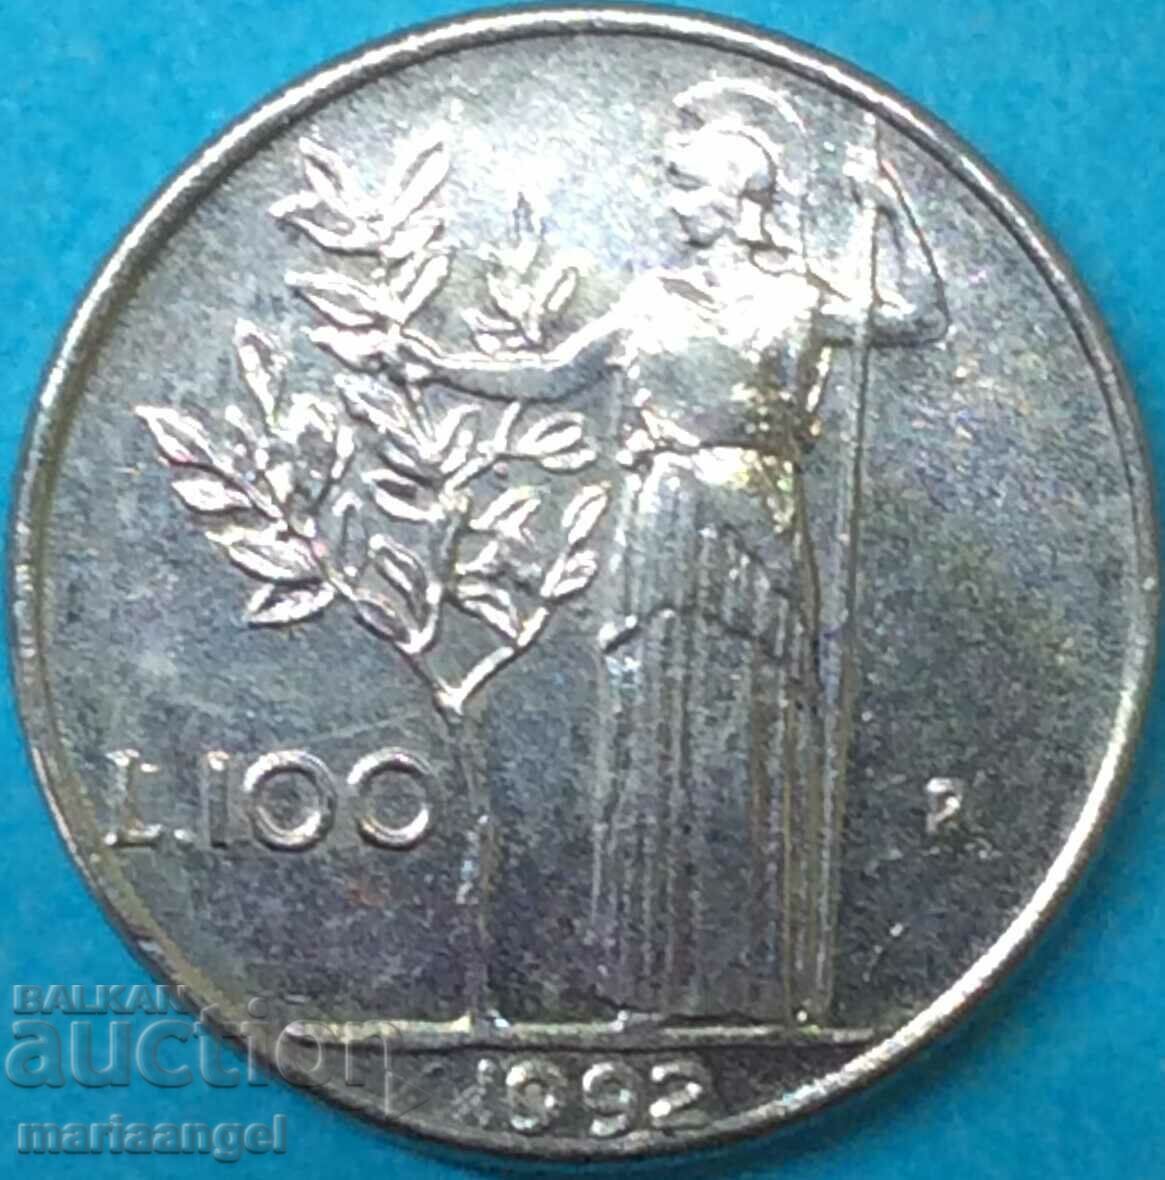 100 λίρες 1992 Ιταλία Minerva